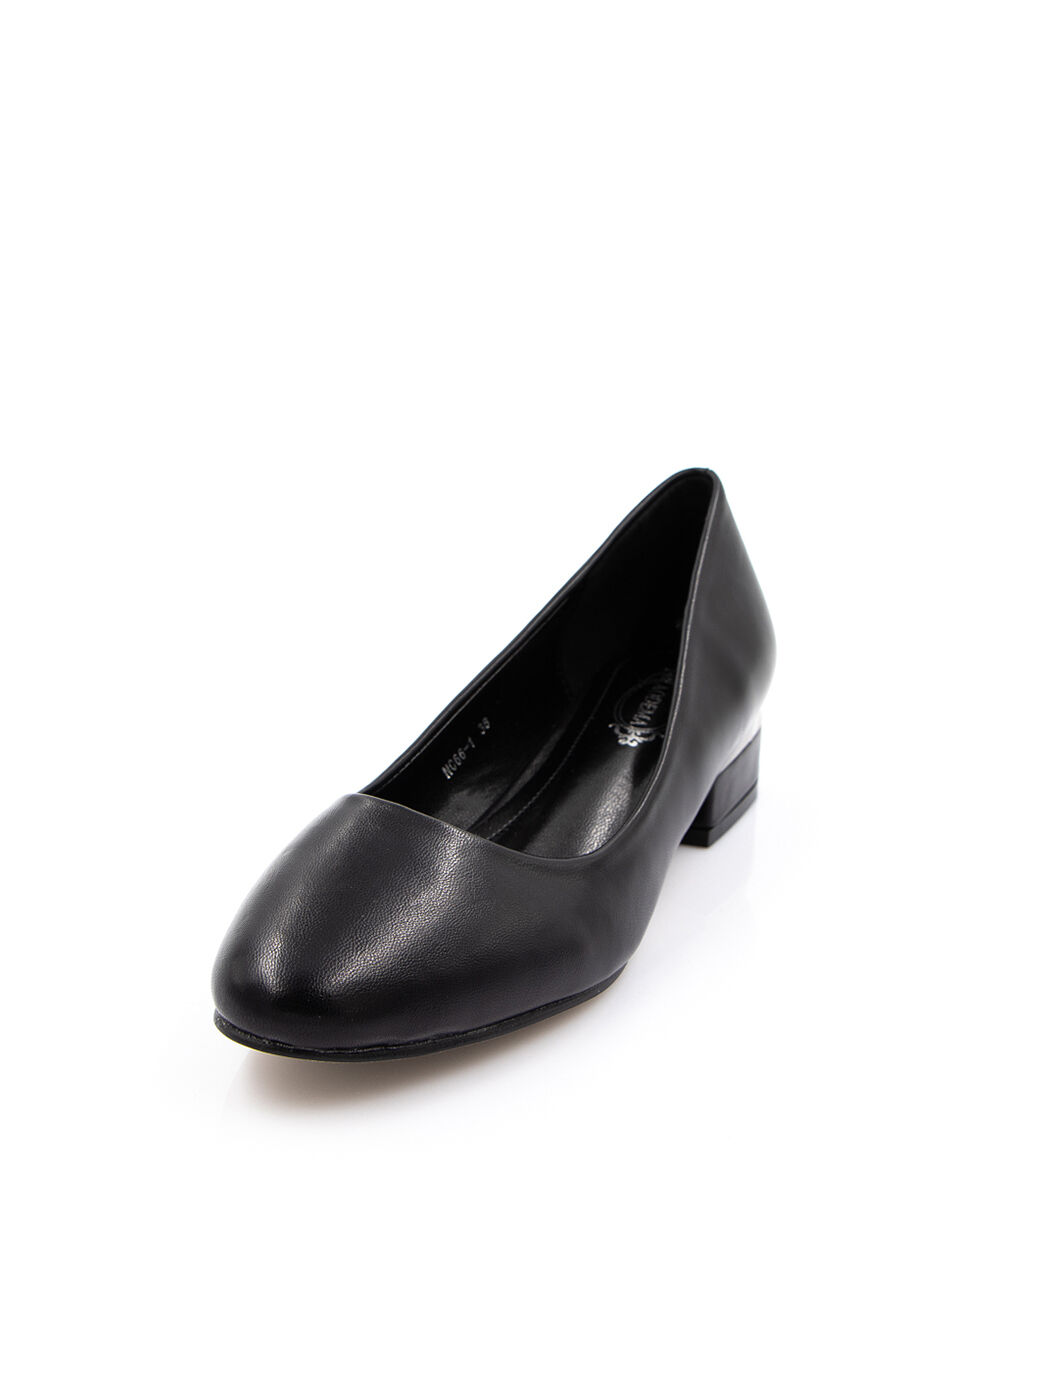 Туфли женские черные экокожа каблук устойчивый демисезон от производителя 1M вид 0